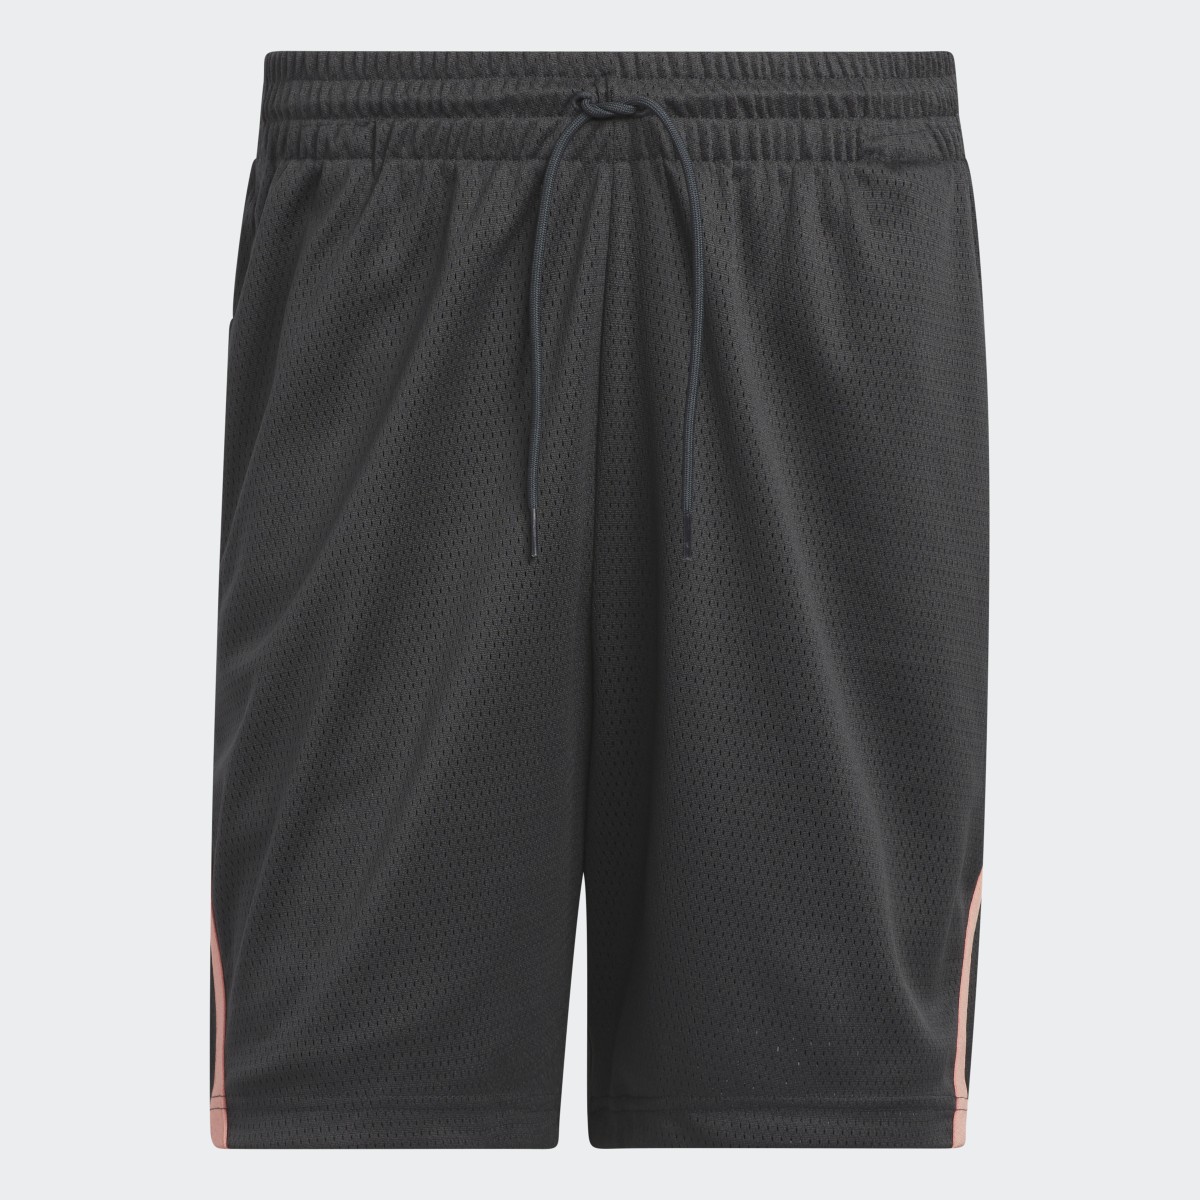 Adidas Select Summer Shorts. 4